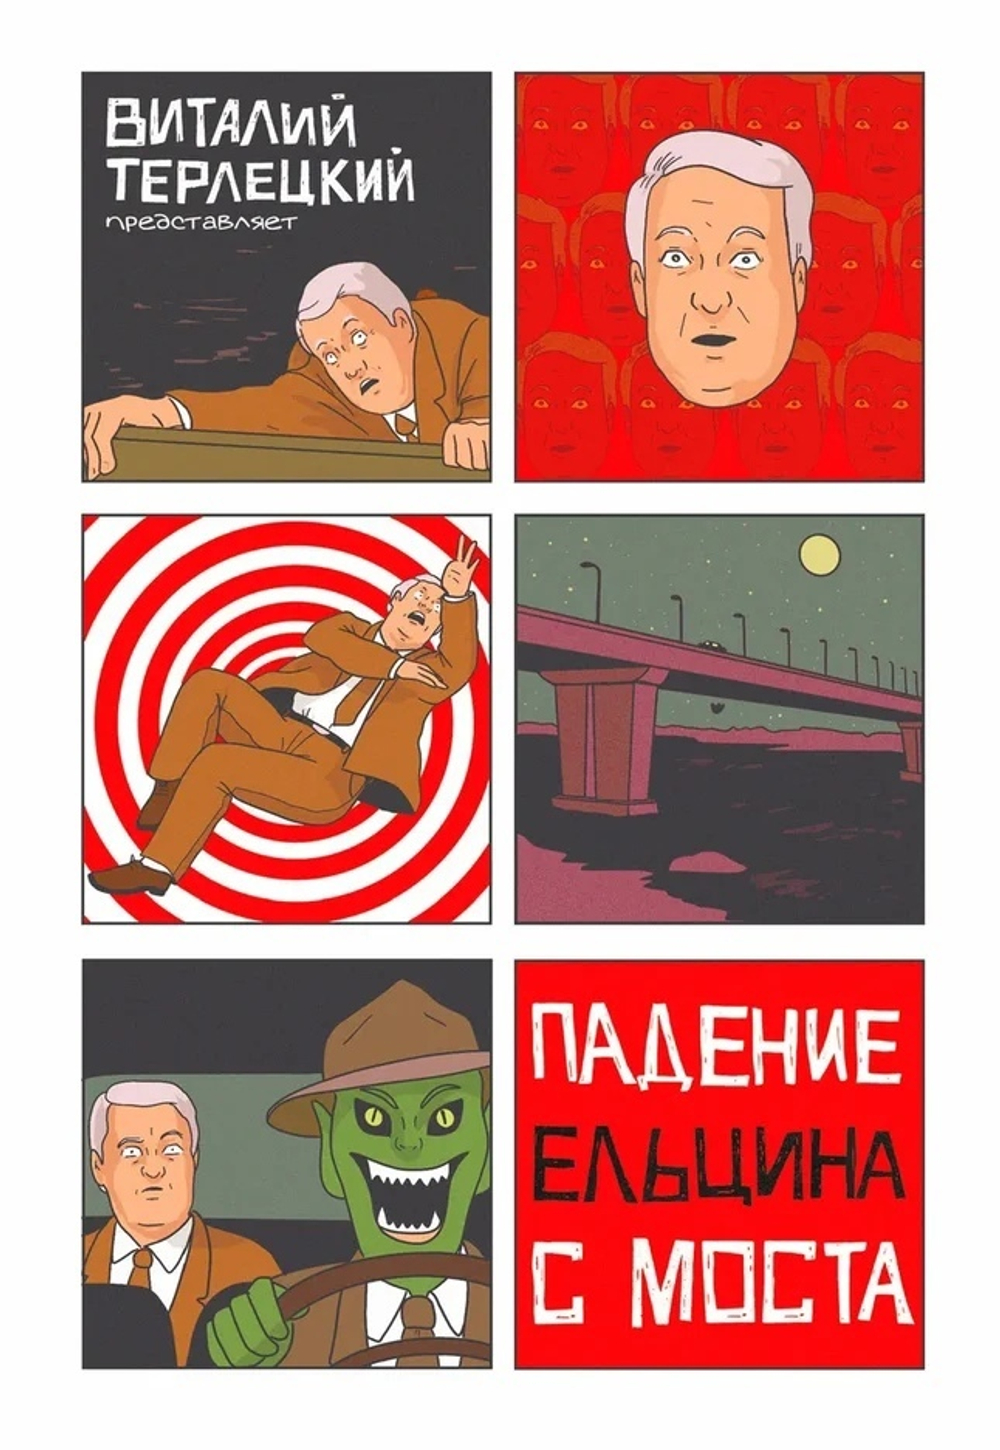 Падение Ельцина с моста (В.Терлецкий)